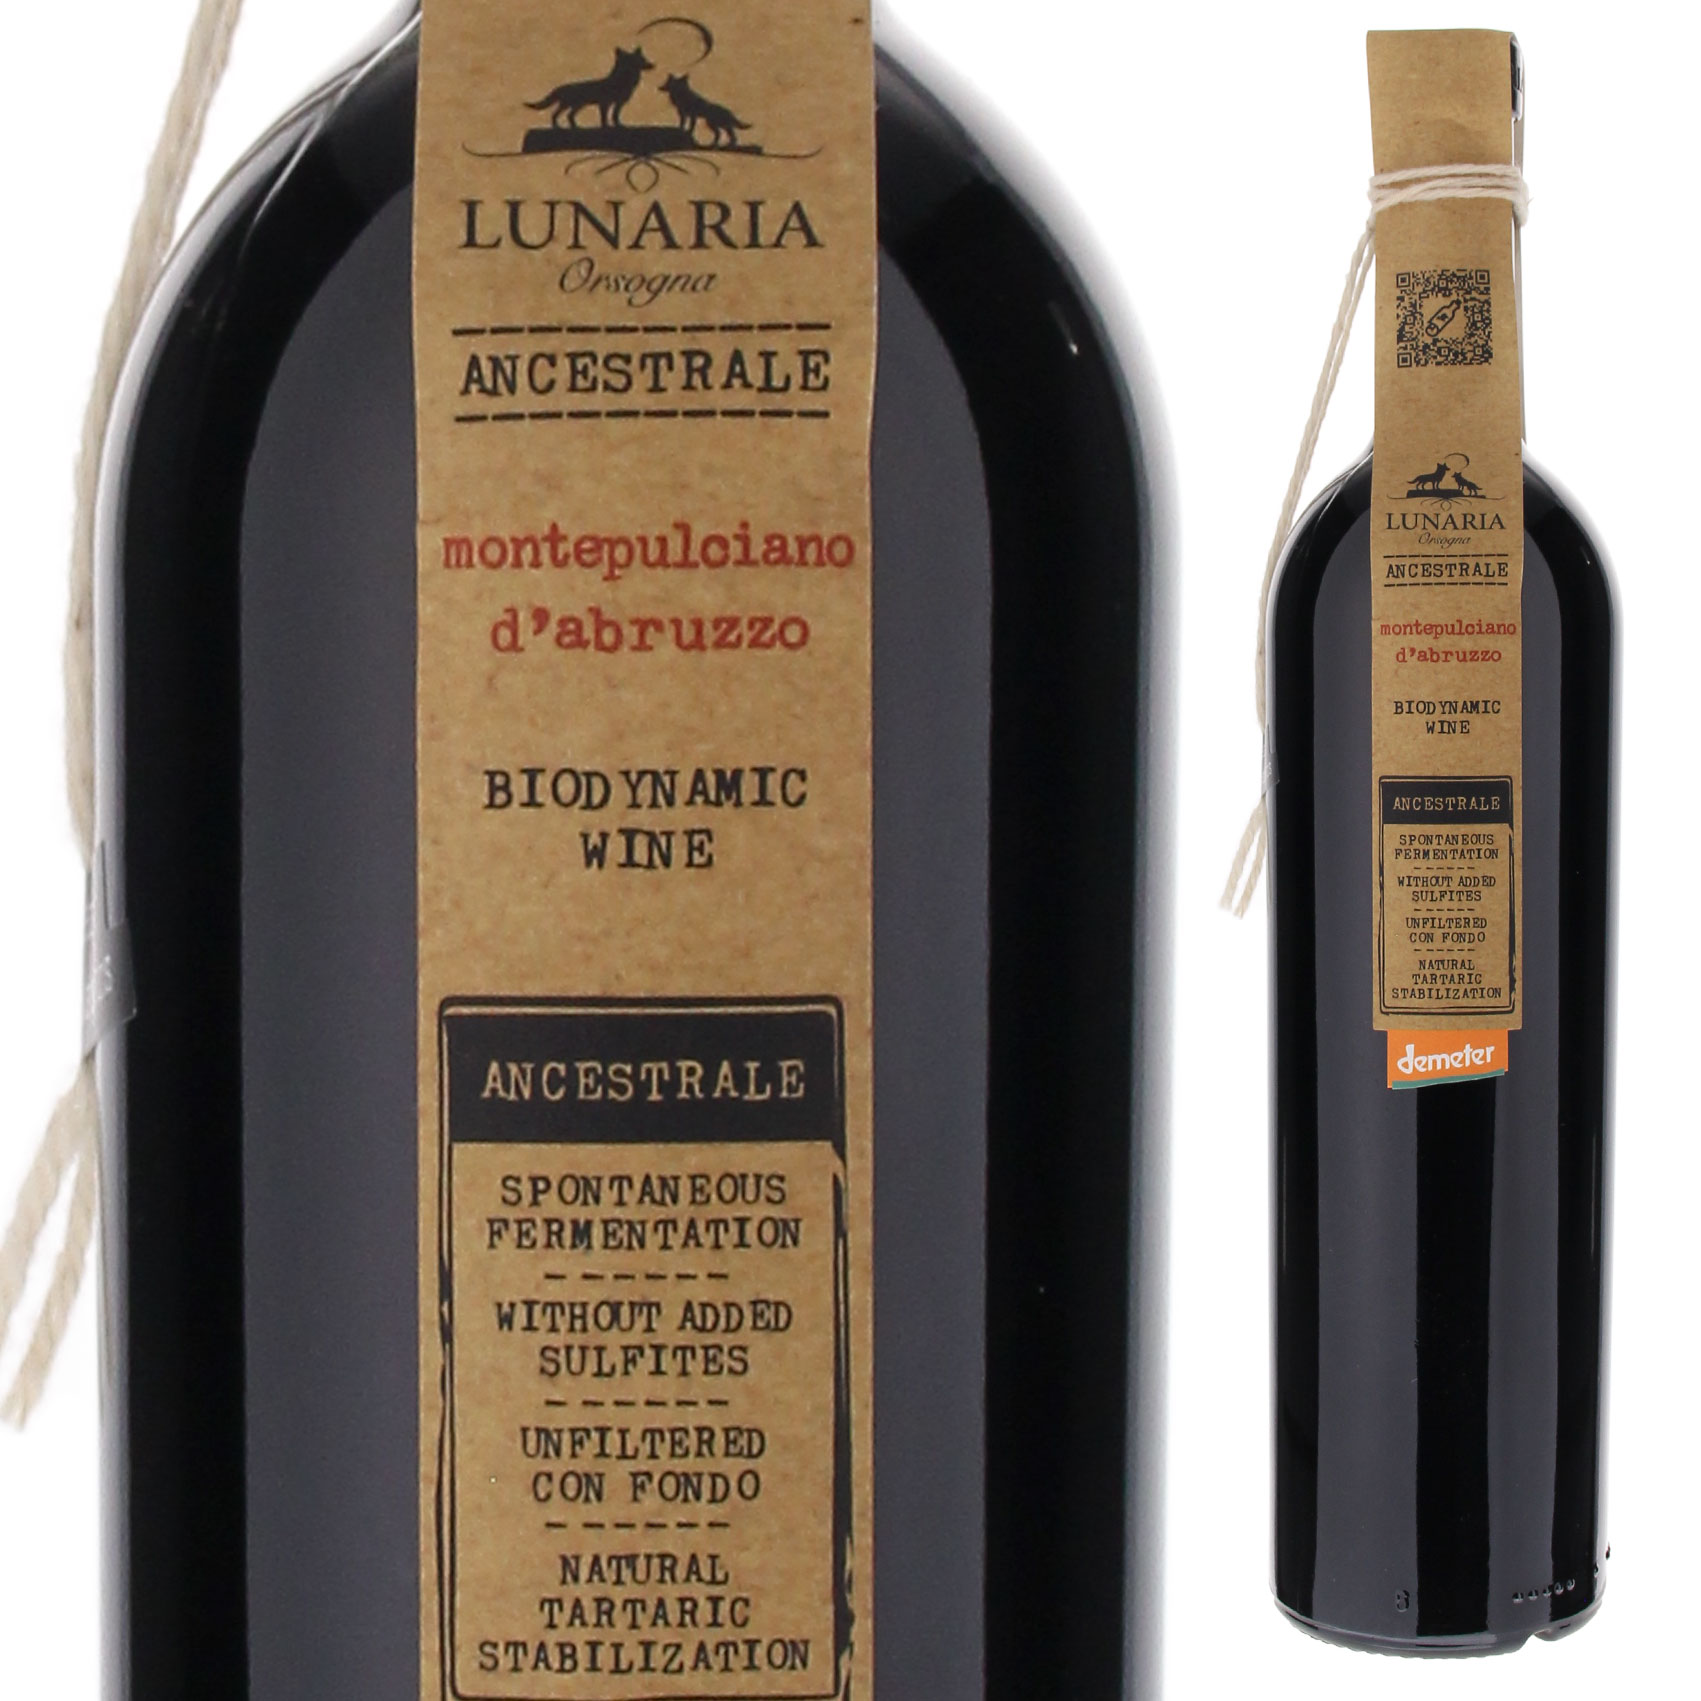 モンテプルチアーノ ダブルッツォ アンセストラル ビオディナミック ナチュレ ワイン 